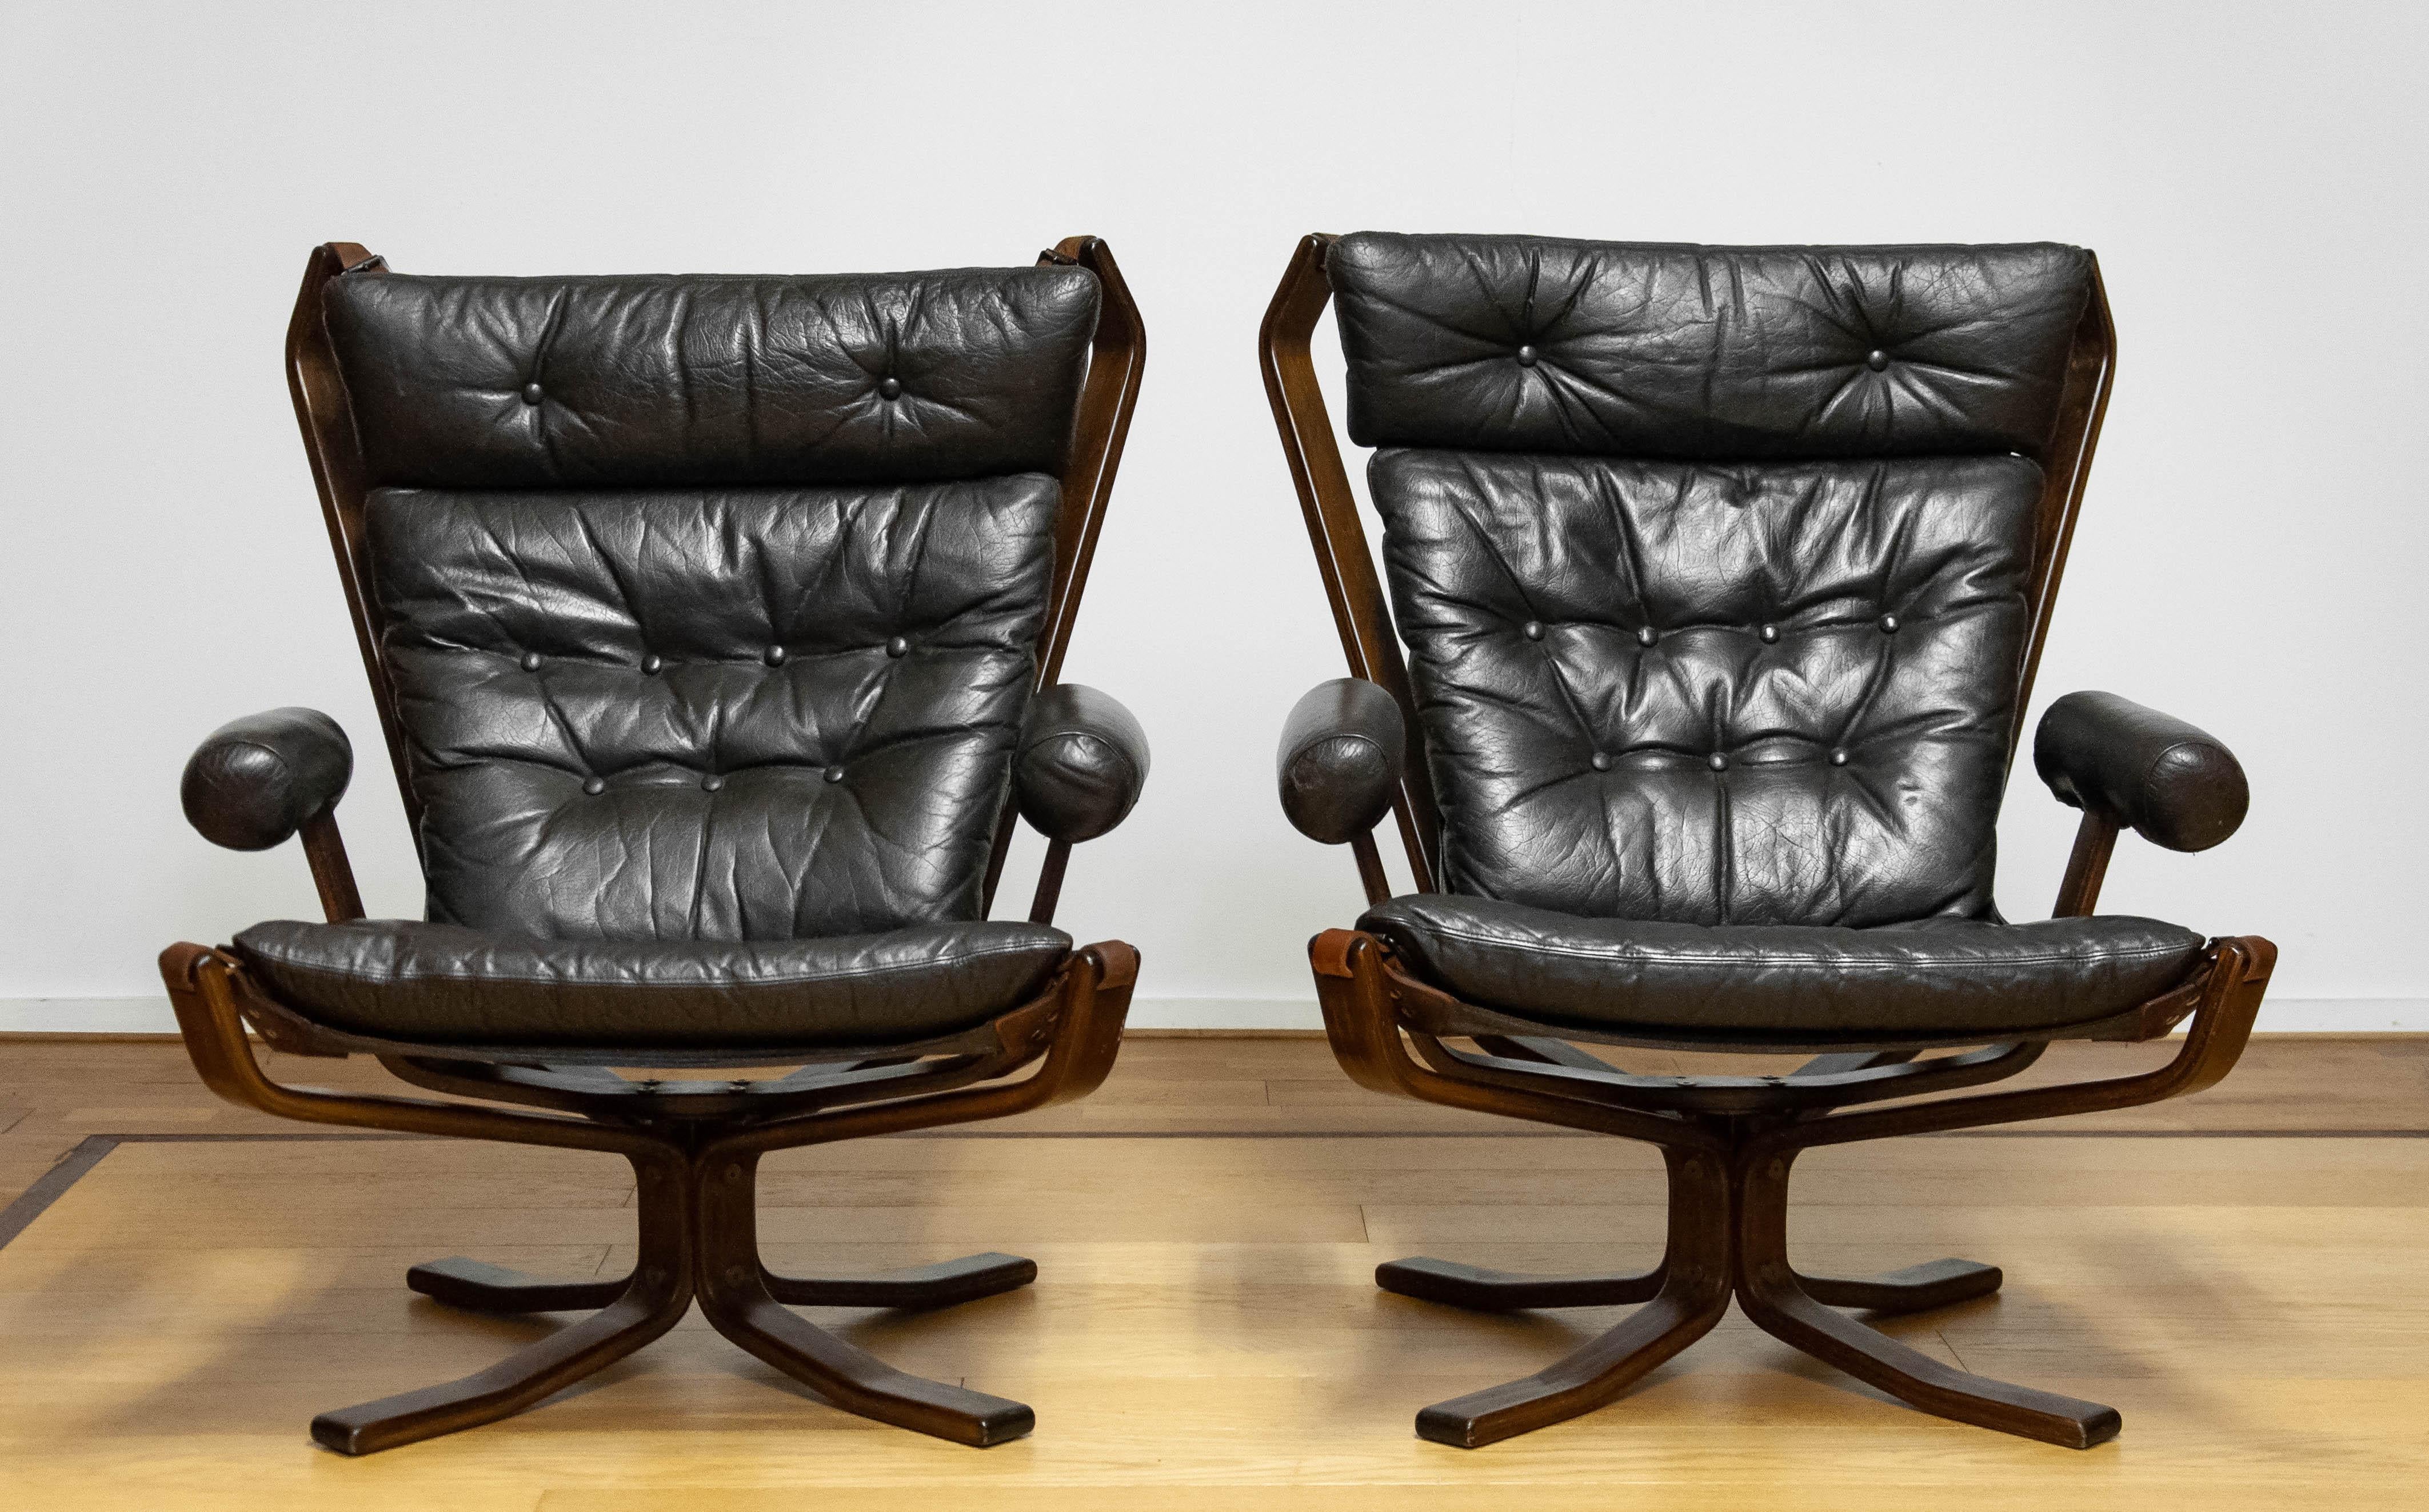 Paire de chaises longues rares modèle 'Superstar' conçues par Sigurd Ressel et fabriquées par Trygg Mobler au Danemark.
Ces modèles ont été fabriqués en édition limitée.
Également célèbre sous le nom de 